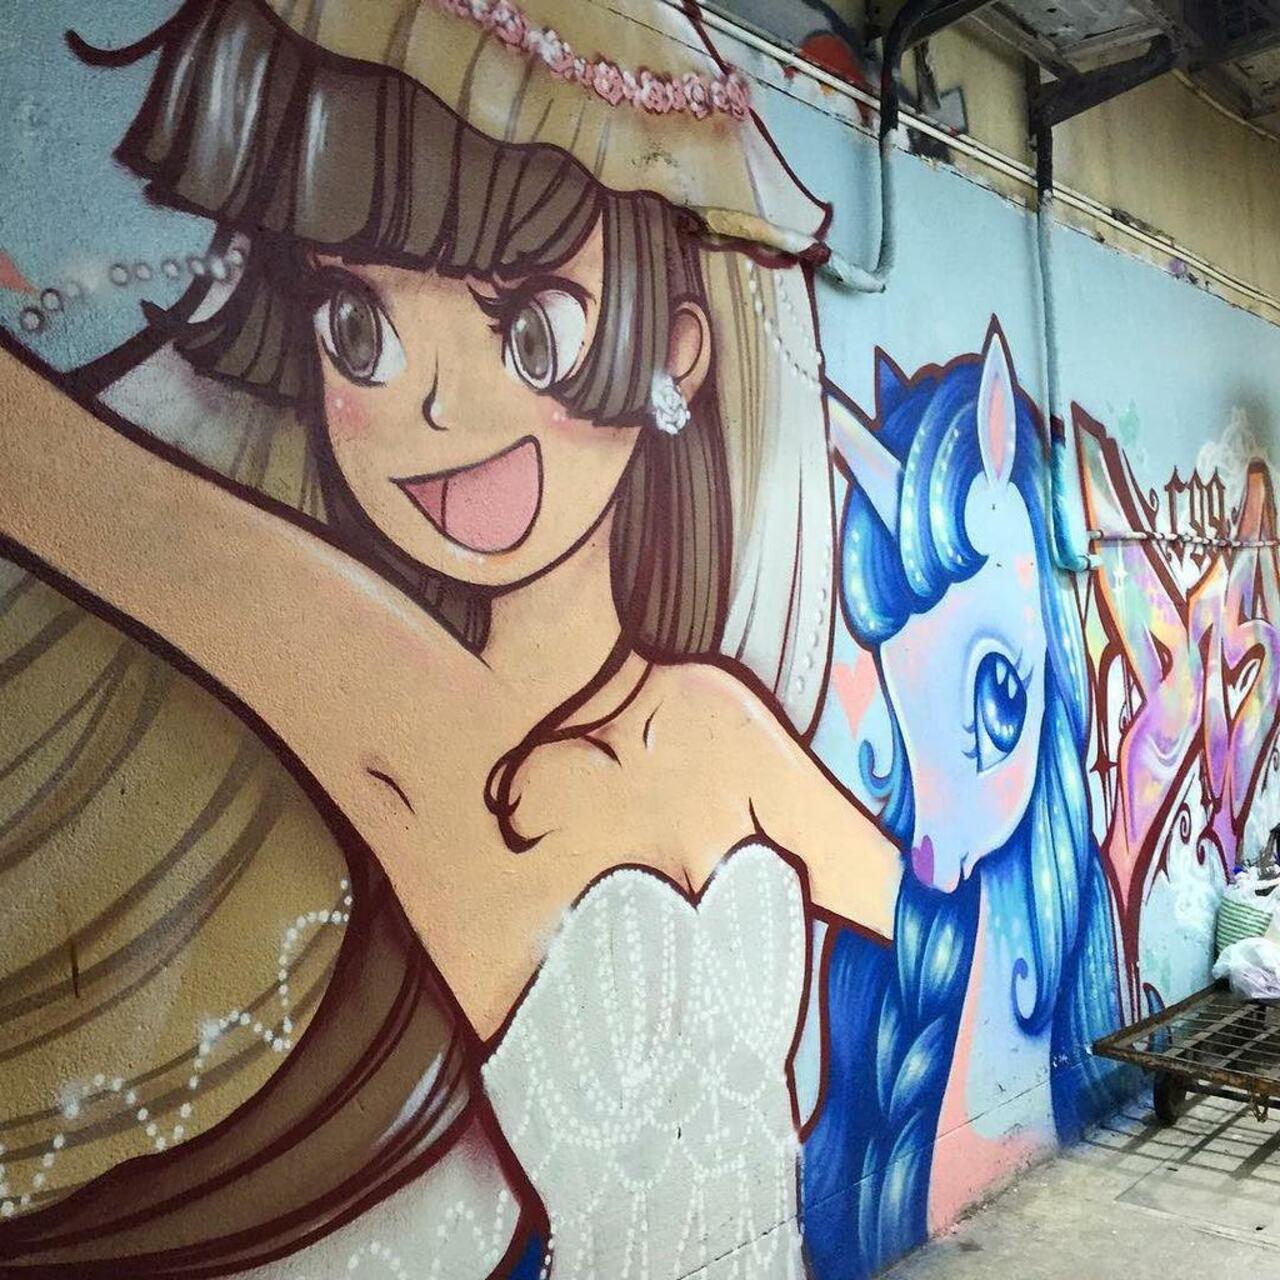 RT @artpushr: via #barbieszeman "http://ift.tt/1LjHQ6P" #graffiti #streetart http://t.co/LZFFWKwFTf